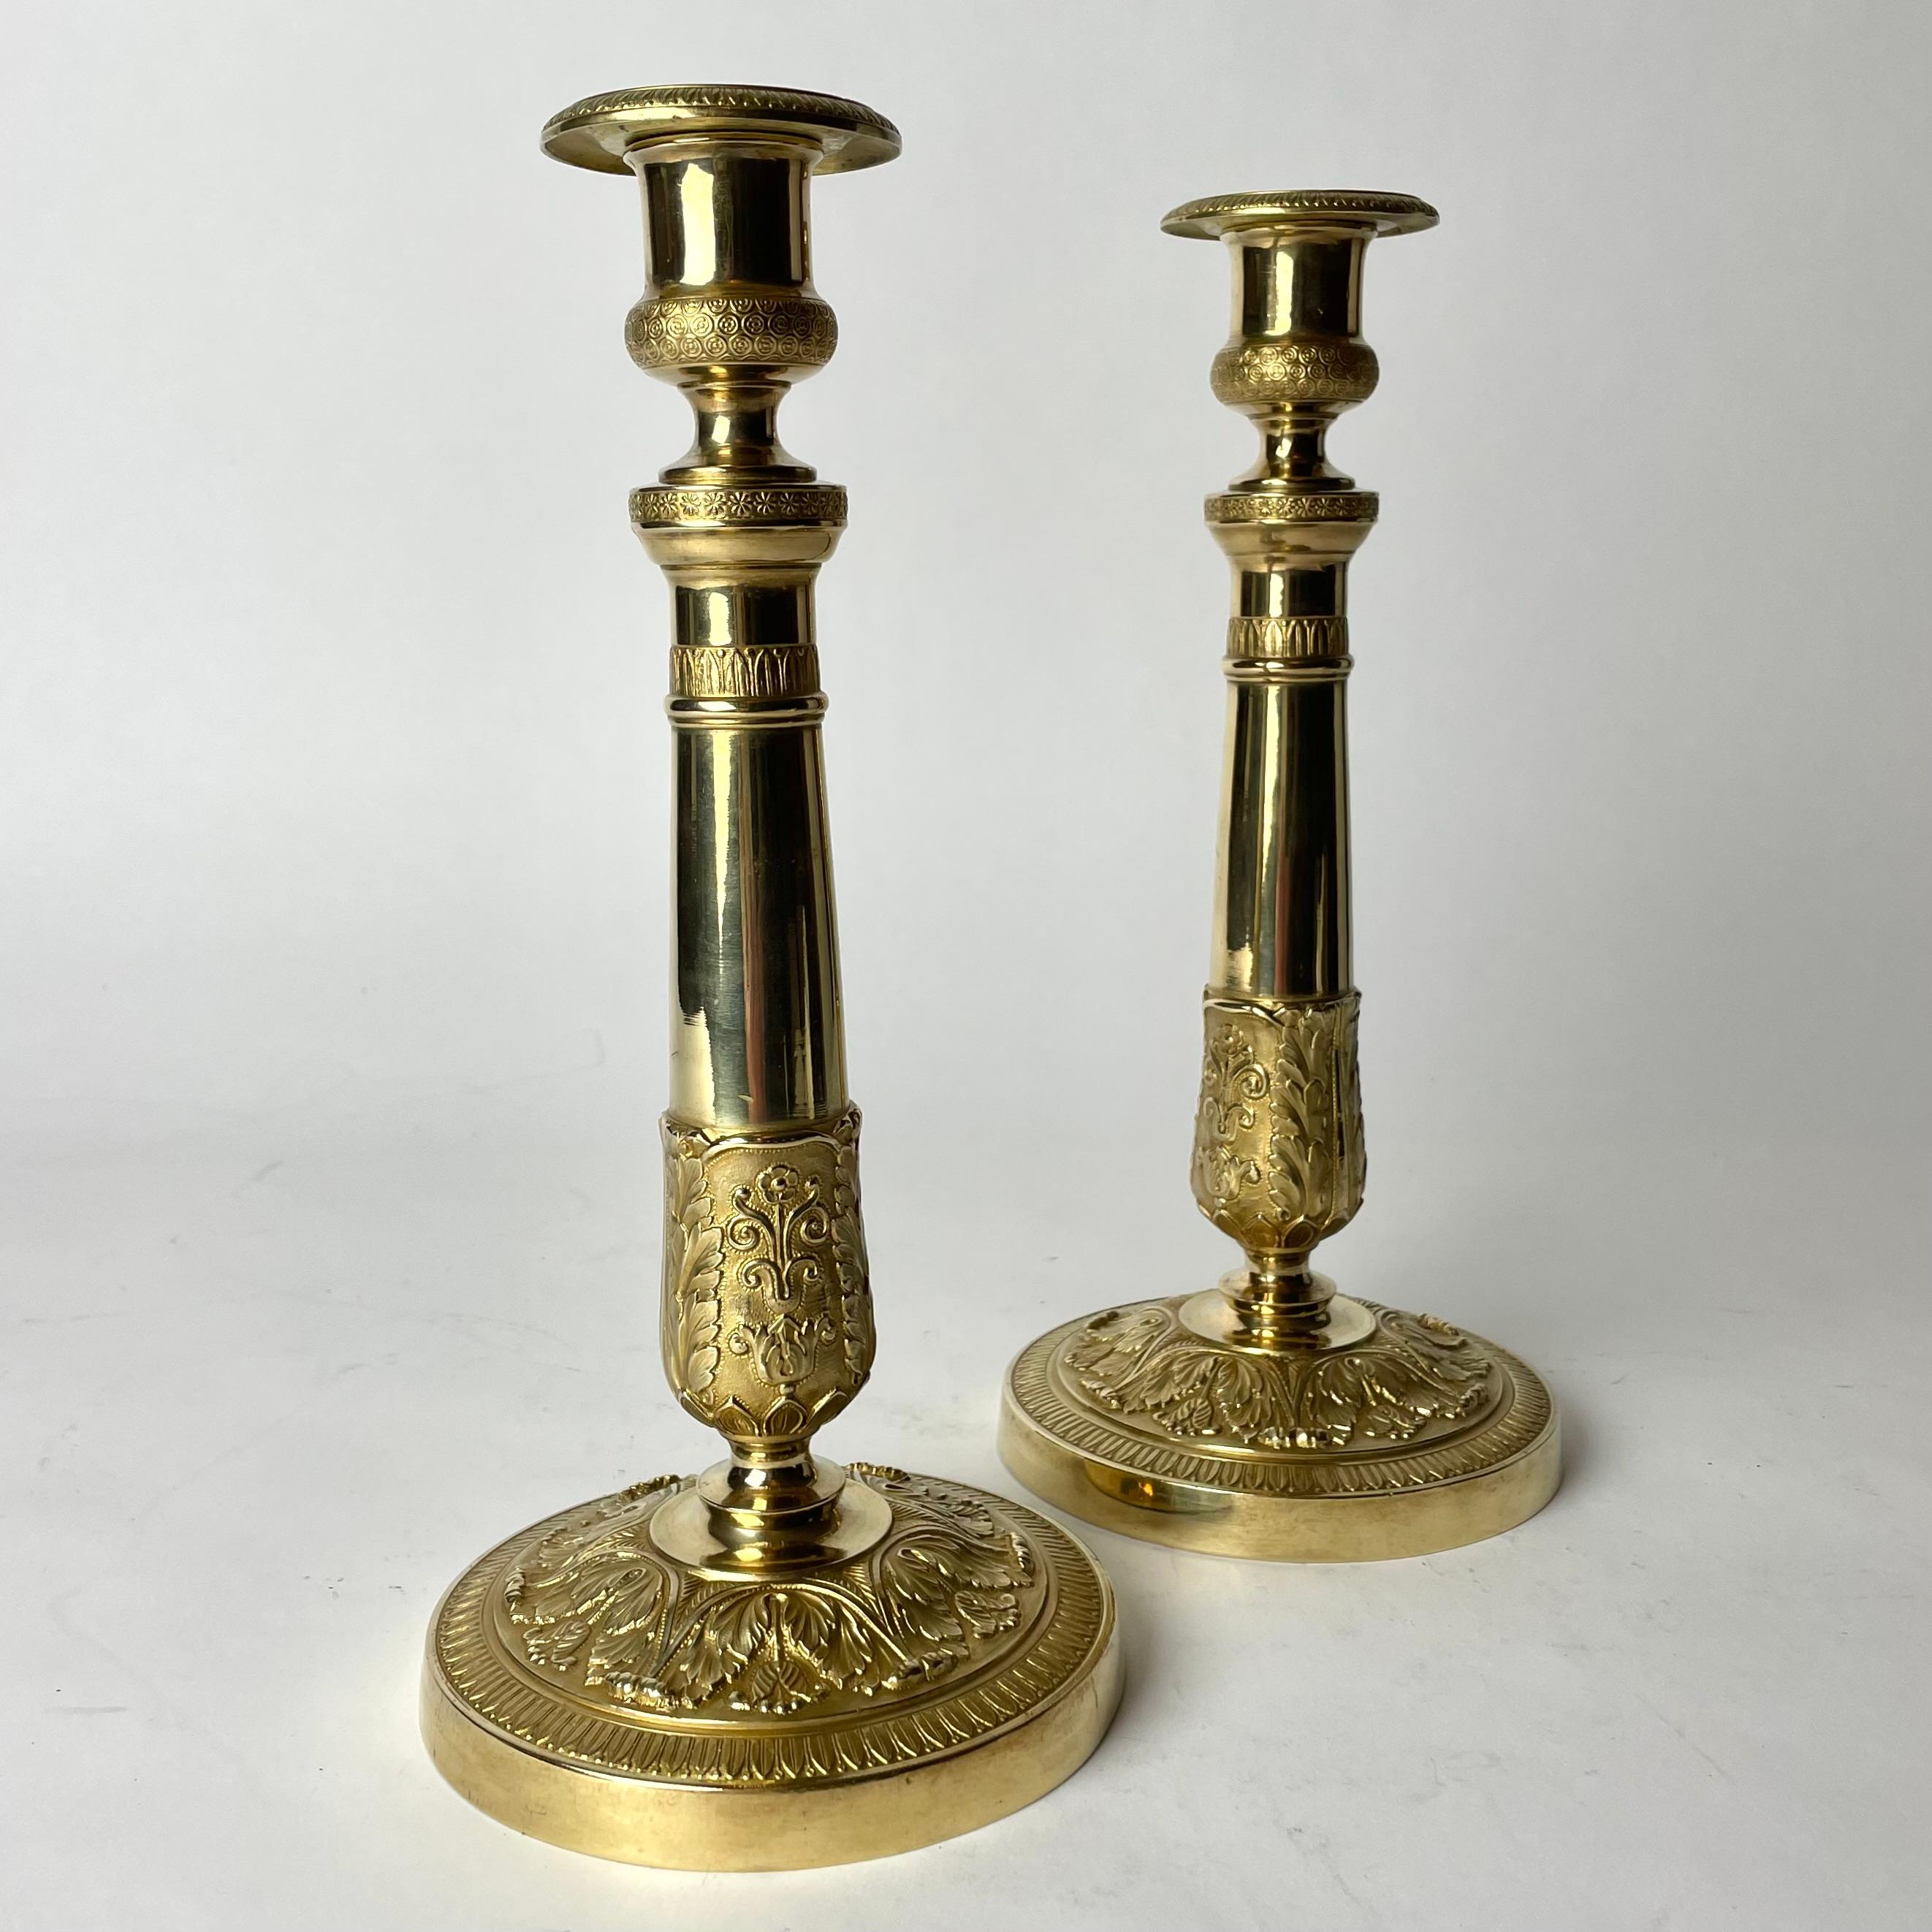 Elegantes Paar Empire-Kerzenleuchter aus vergoldeter Bronze. Hergestellt in Frankreich in den 1820er Jahren. Reich verziert mit zeitgenössischen Dekorationen.

Abnutzung entsprechend dem Alter und dem Gebrauch 